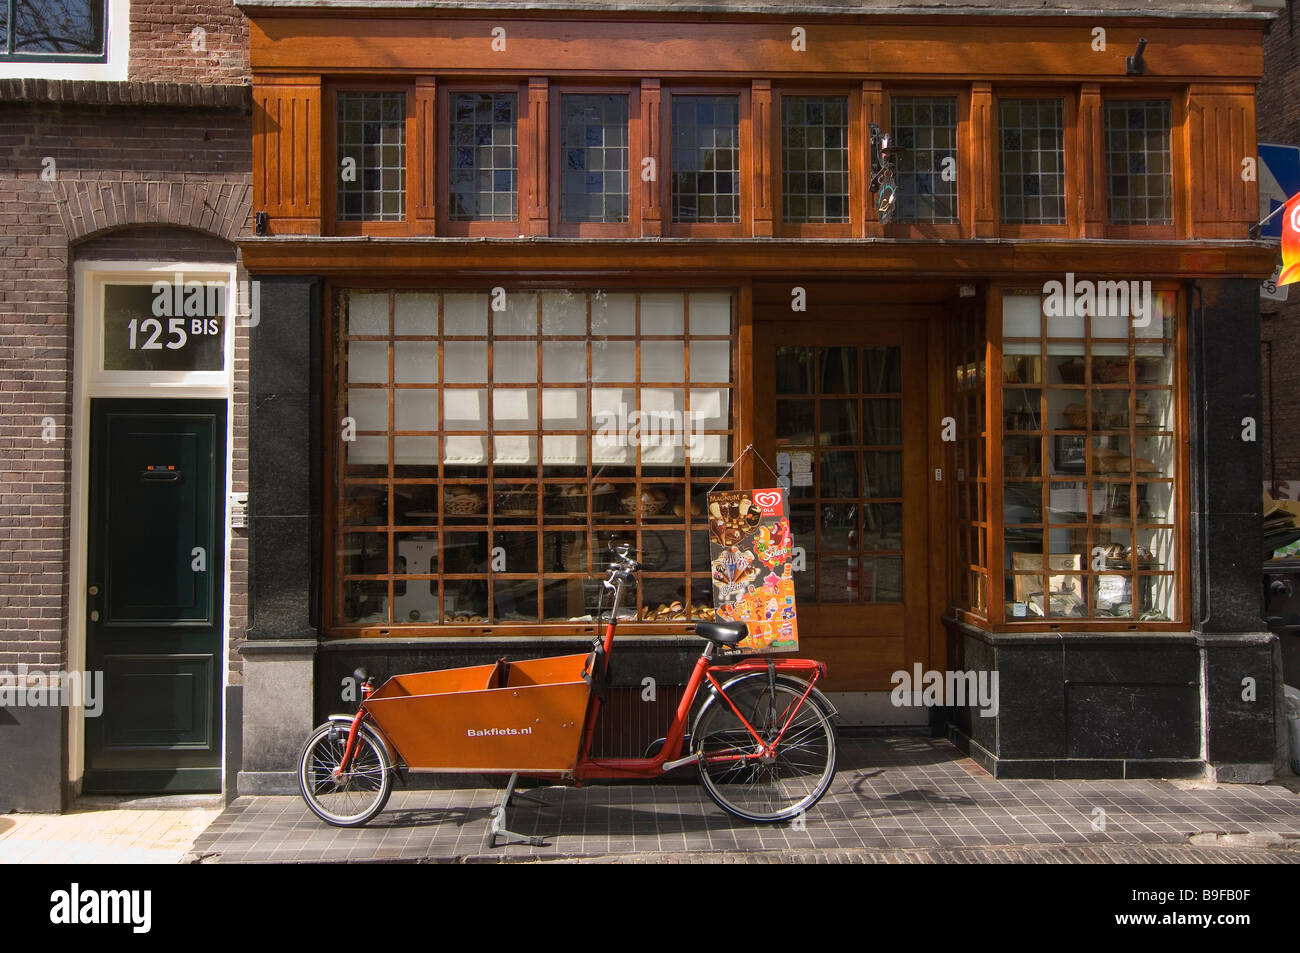 Bicicletta parcheggiata nella parte anteriore del negozio, Utrecht, Paesi Bassi Foto Stock